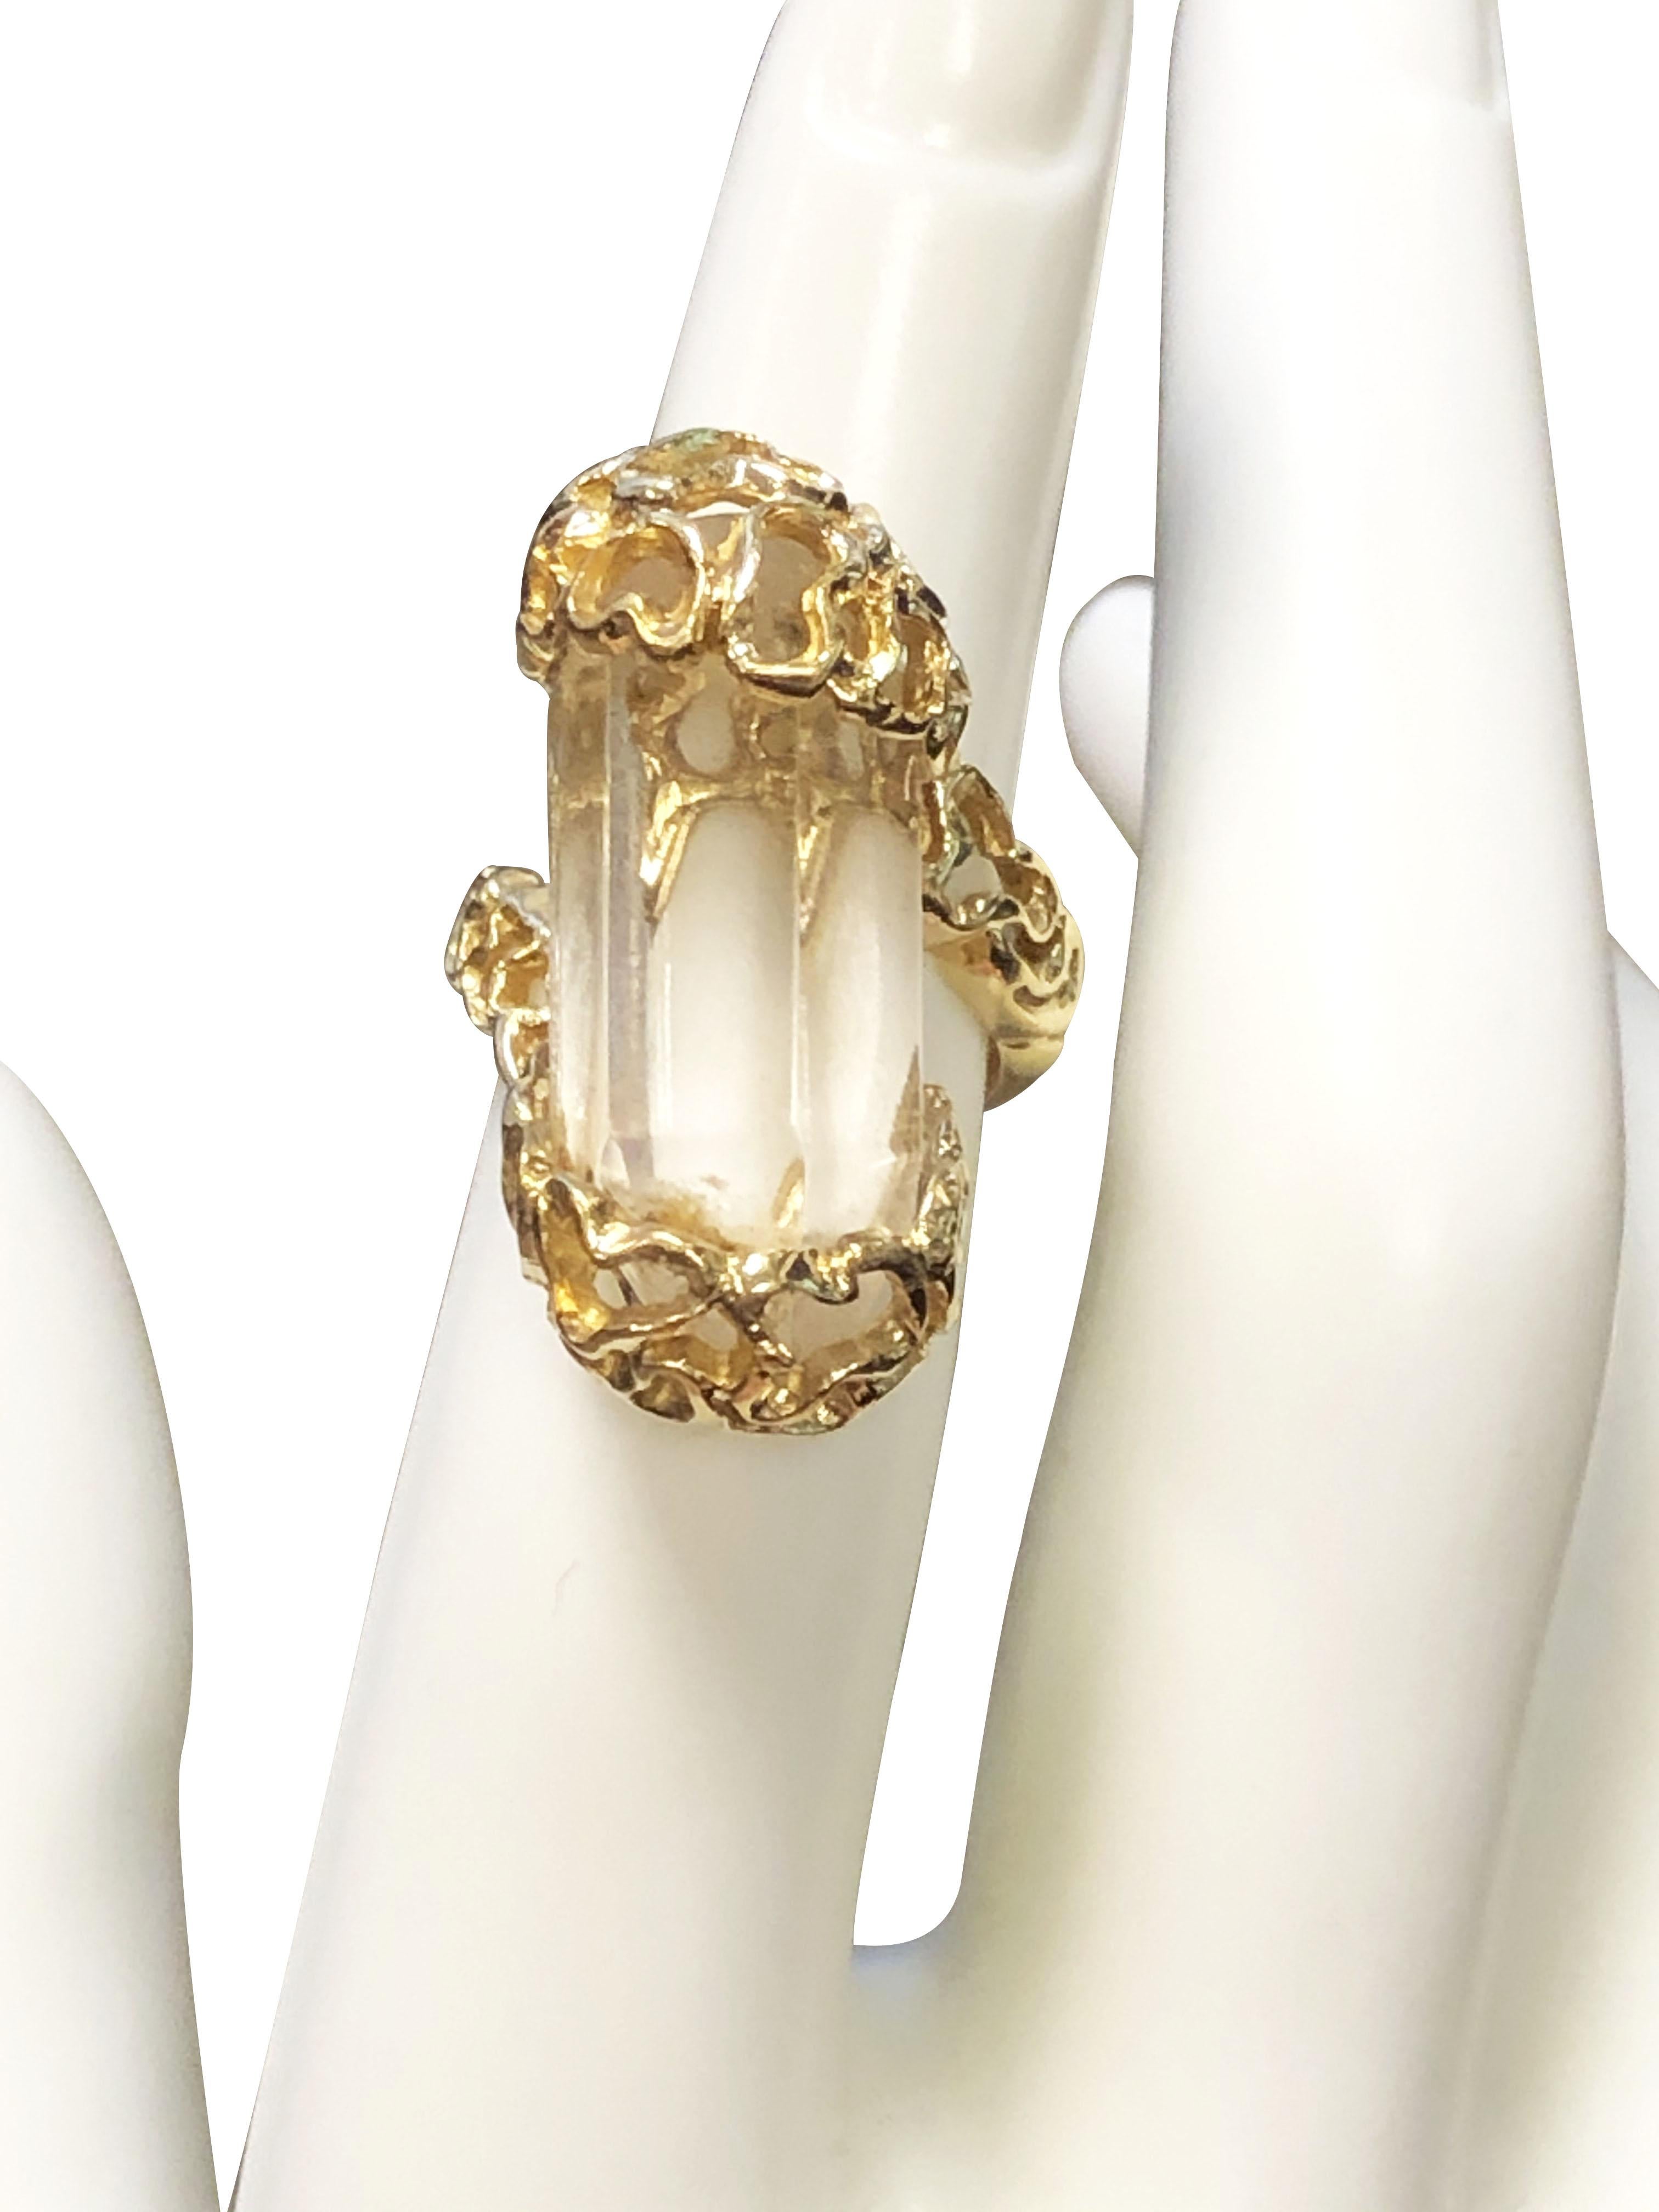 CIRCA 1980er Jahre Ilias Lalaounis 18K Gelbgold Ring, die Oberseite des Rings misst 1 1/8 Zoll in der Länge und ist mit einem 6-seitigen facettierten gesetzt  klarer Bergkristall, in freier Form im modernistischen Stil gefertigt. Fingergröße 4 1/2. 